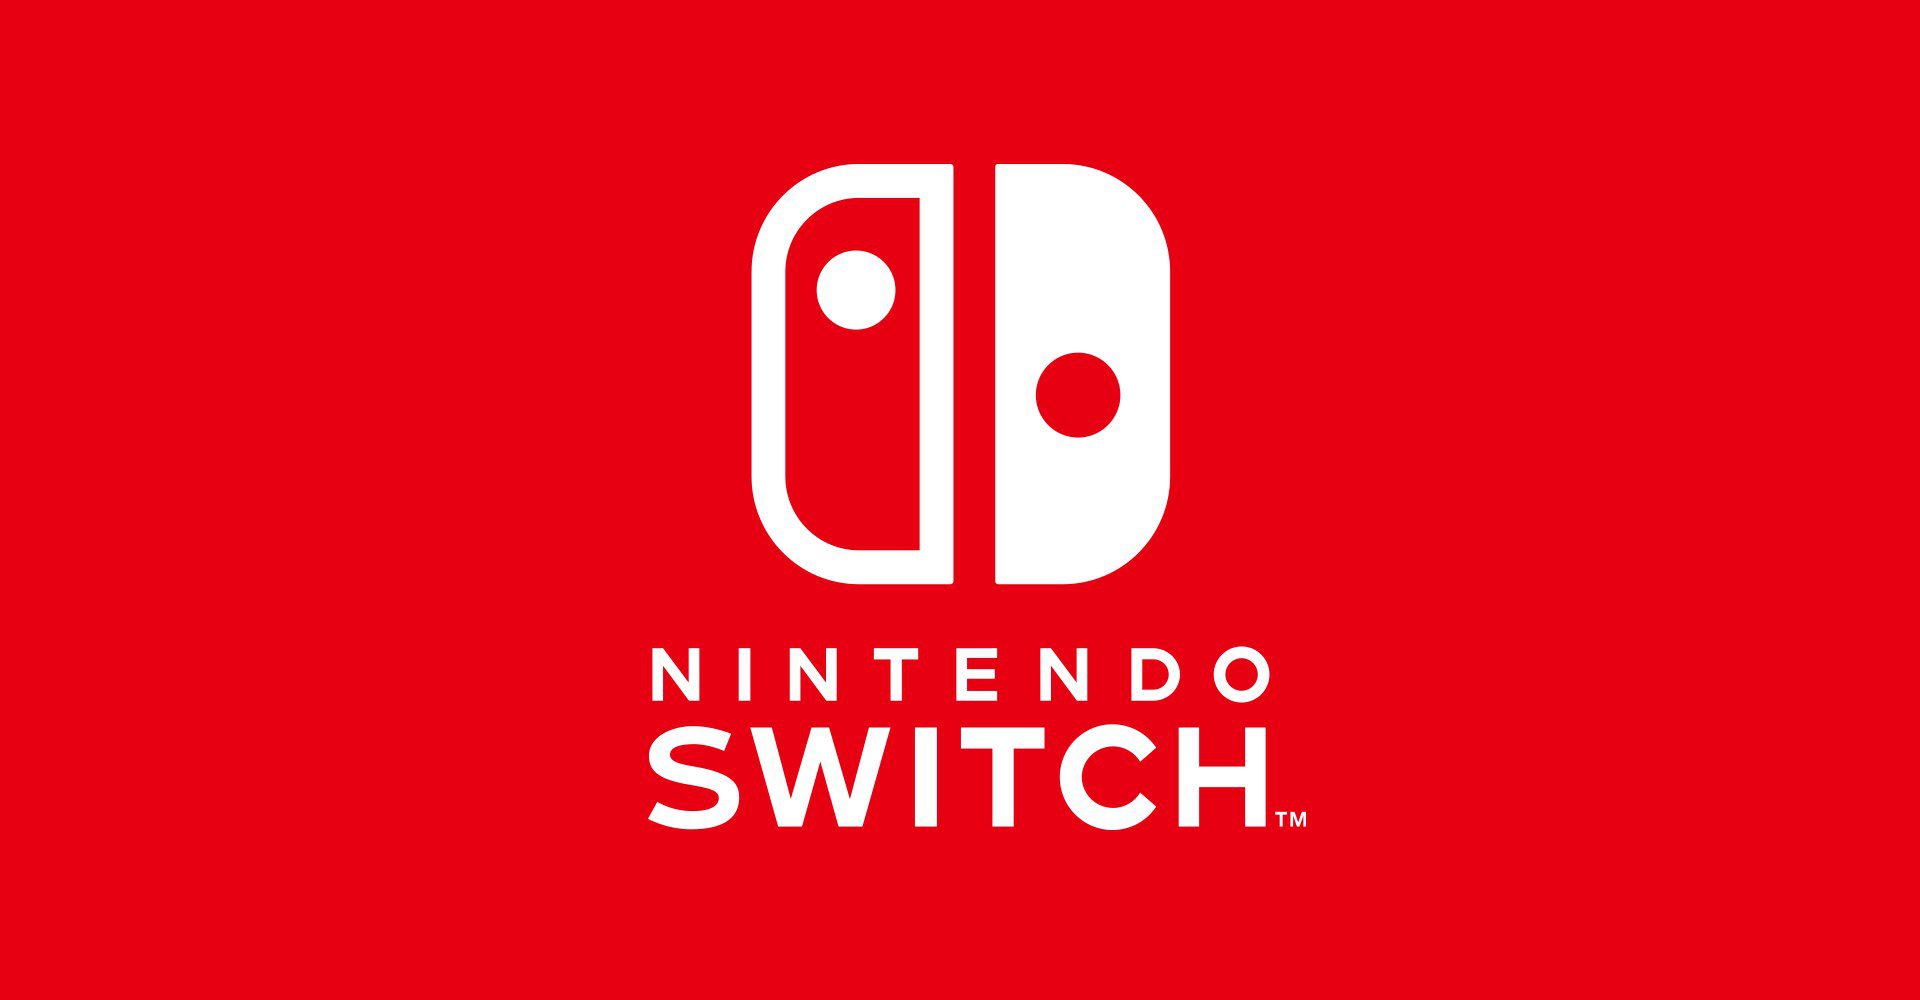 Όχι δεν αξίζει να αγοράσεις Nintendo Switch!